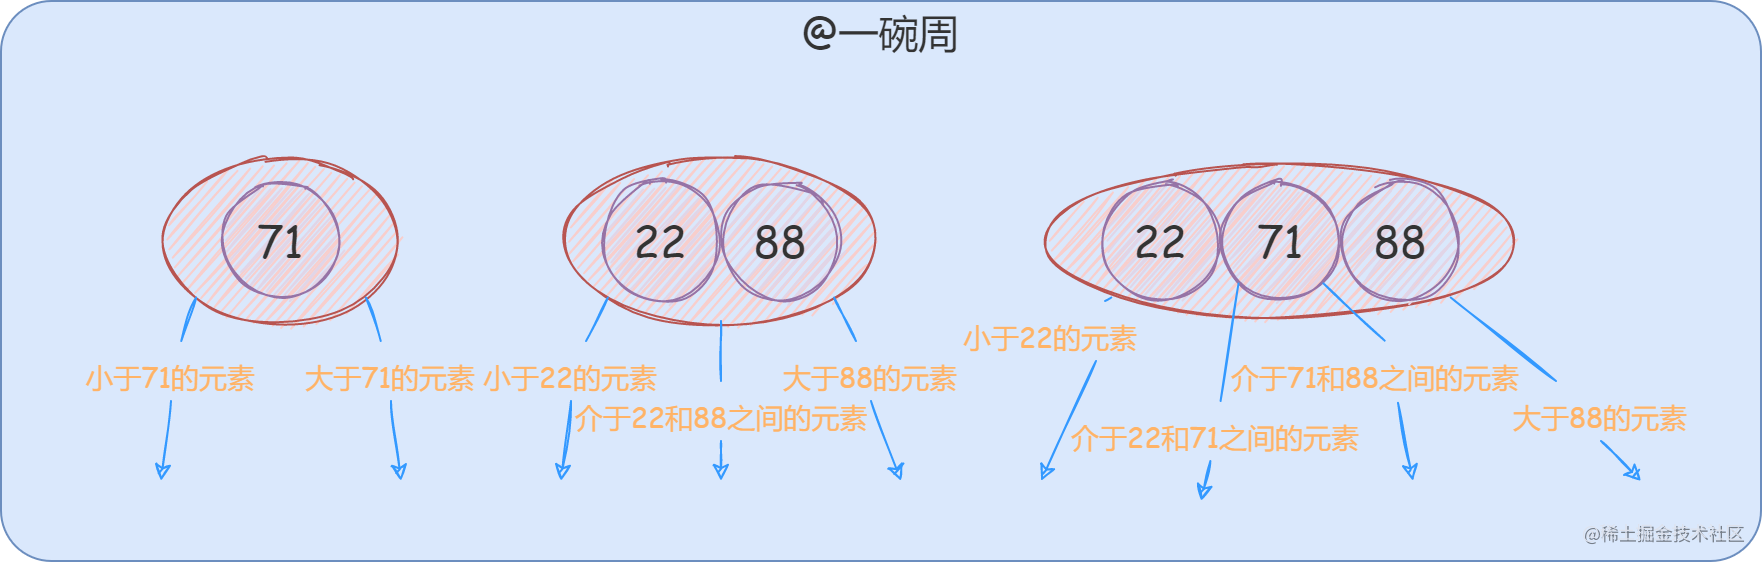 12_2-3-4树的节点.drawio_DiOzlOG0Of.png